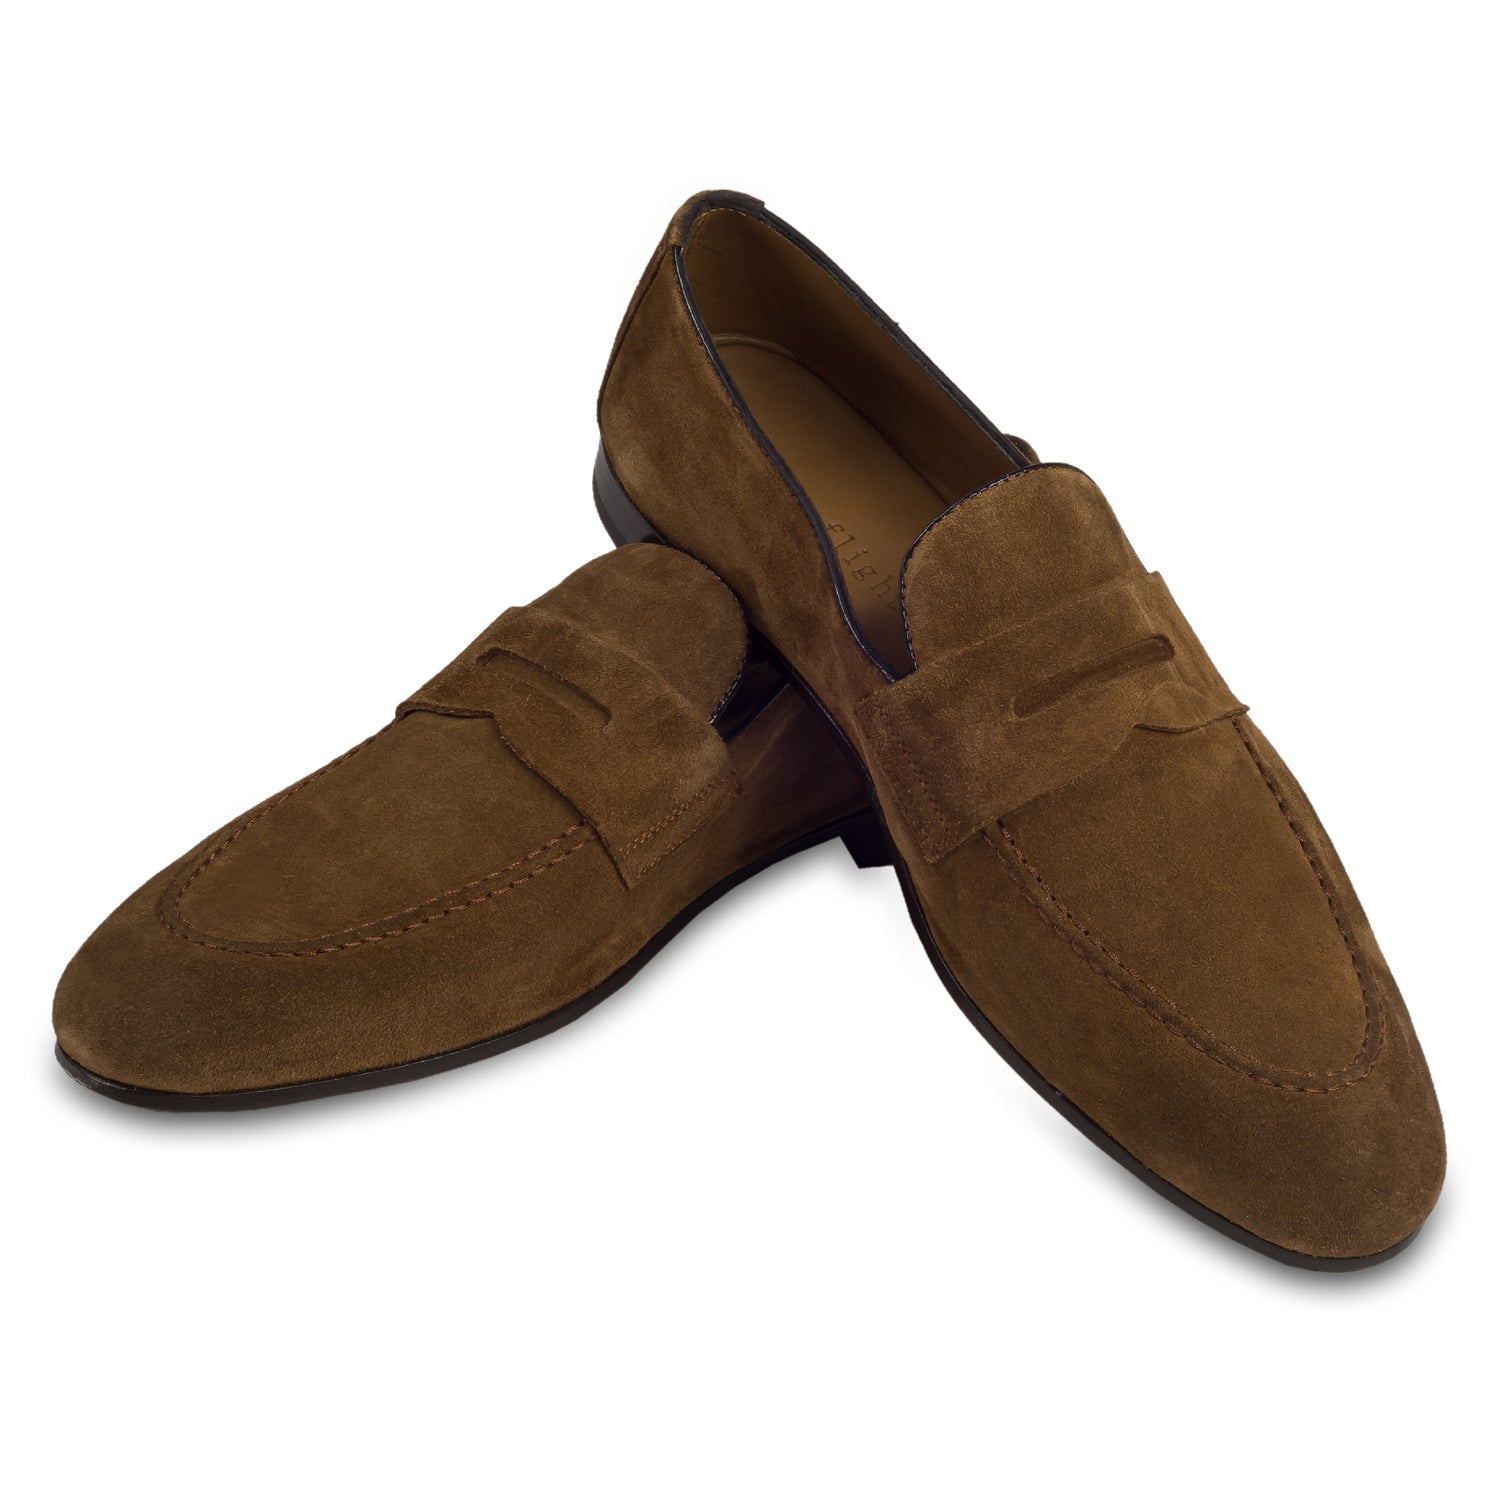 Triverflight - Italienische Herren Loafer in braunem Velours-Leder, Sacchetto-Machart. Handgefertigt. Paarweise Ansicht Schuhe überkreuzt aufgestellt.